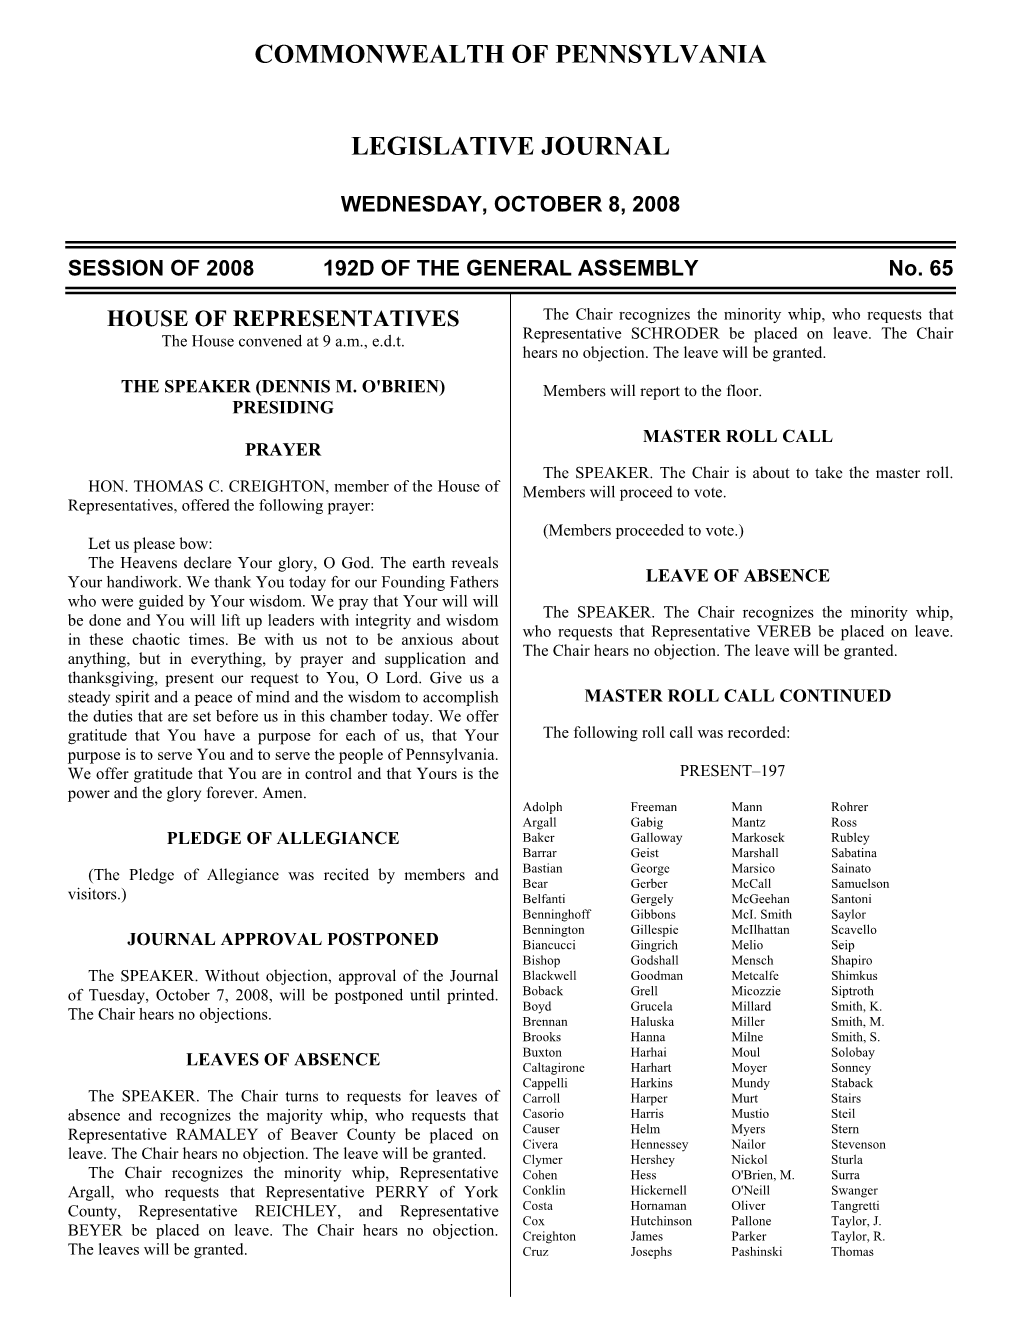 2328 Legislative Journal—House October 8